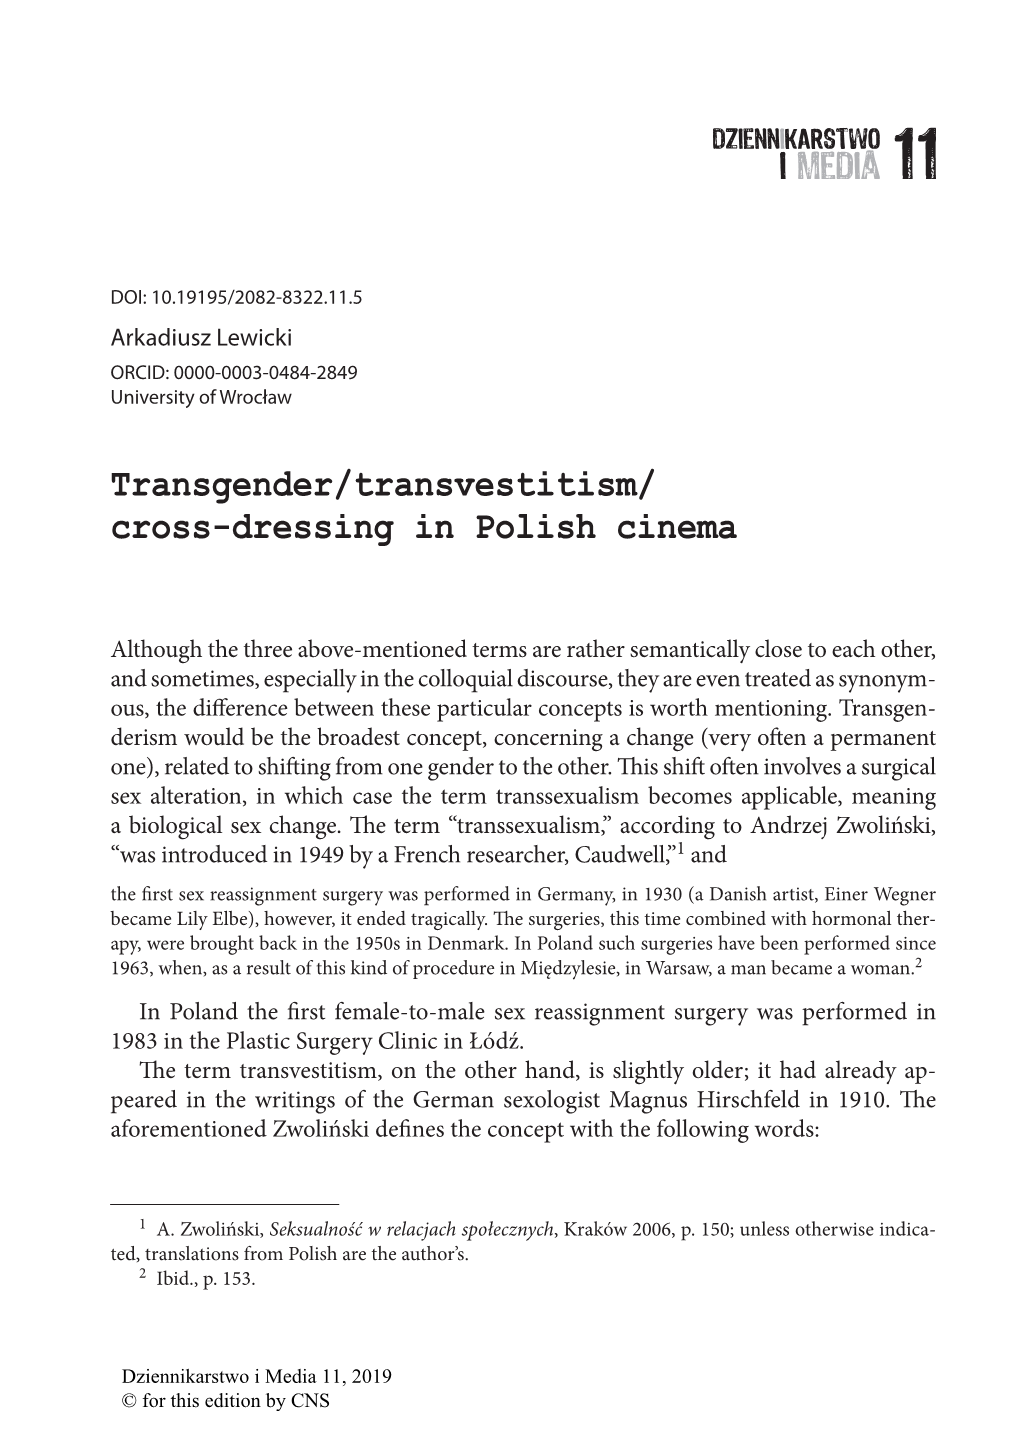 Transgender/Transvestitism/ Cross-Dressing in Polish Cinema